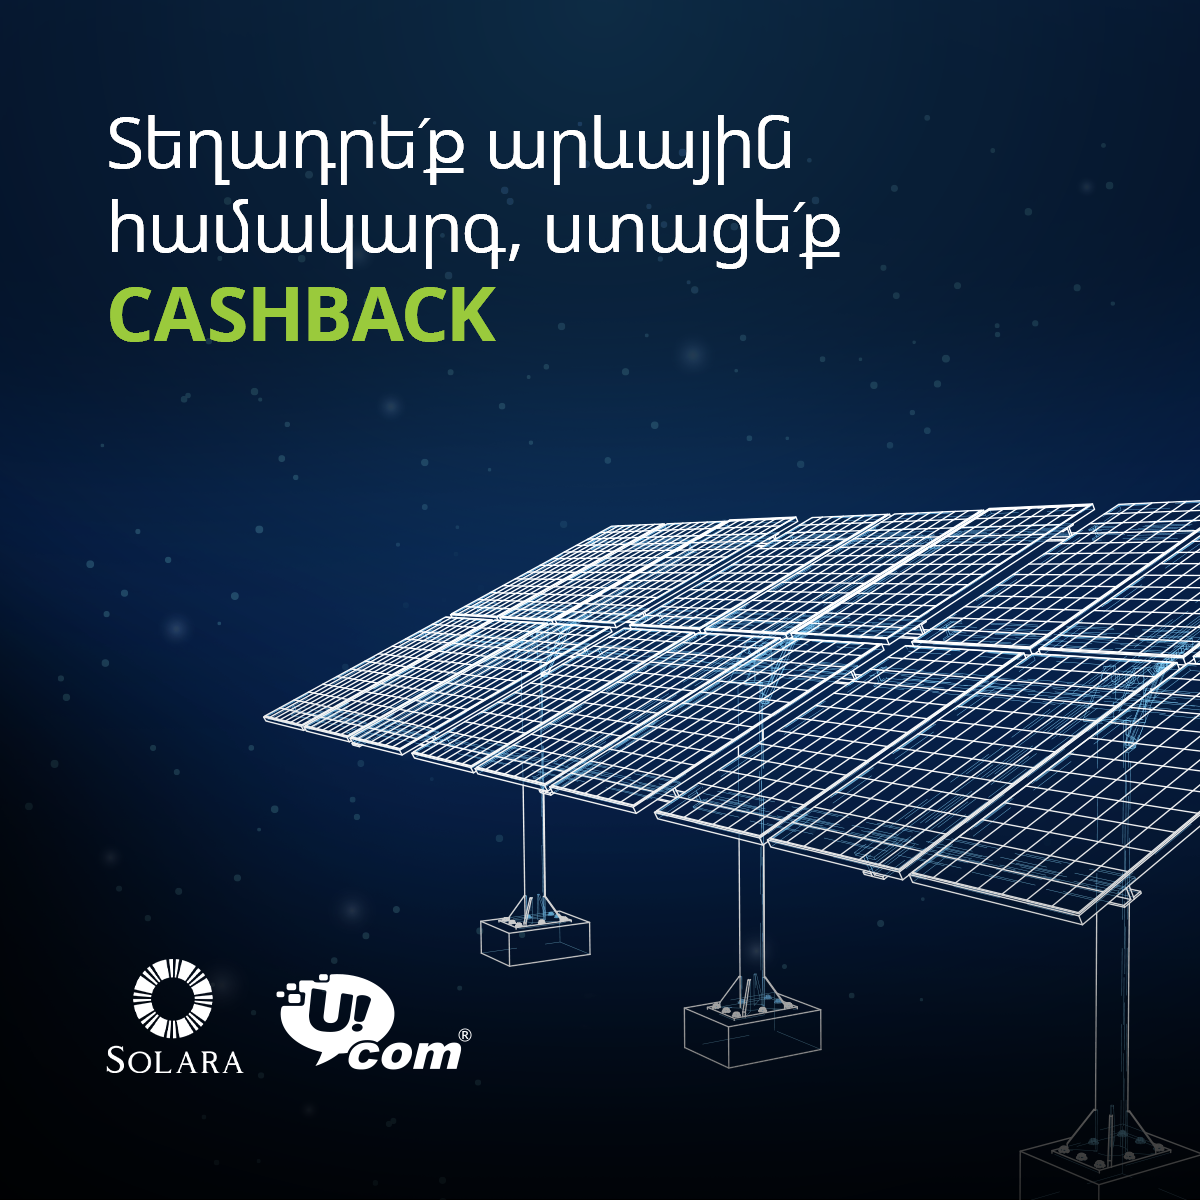 Альтернативная энергия: в результате партнерства «Ucom» с «Solara» в выигрыше окажутся бизнес-клиенты 1